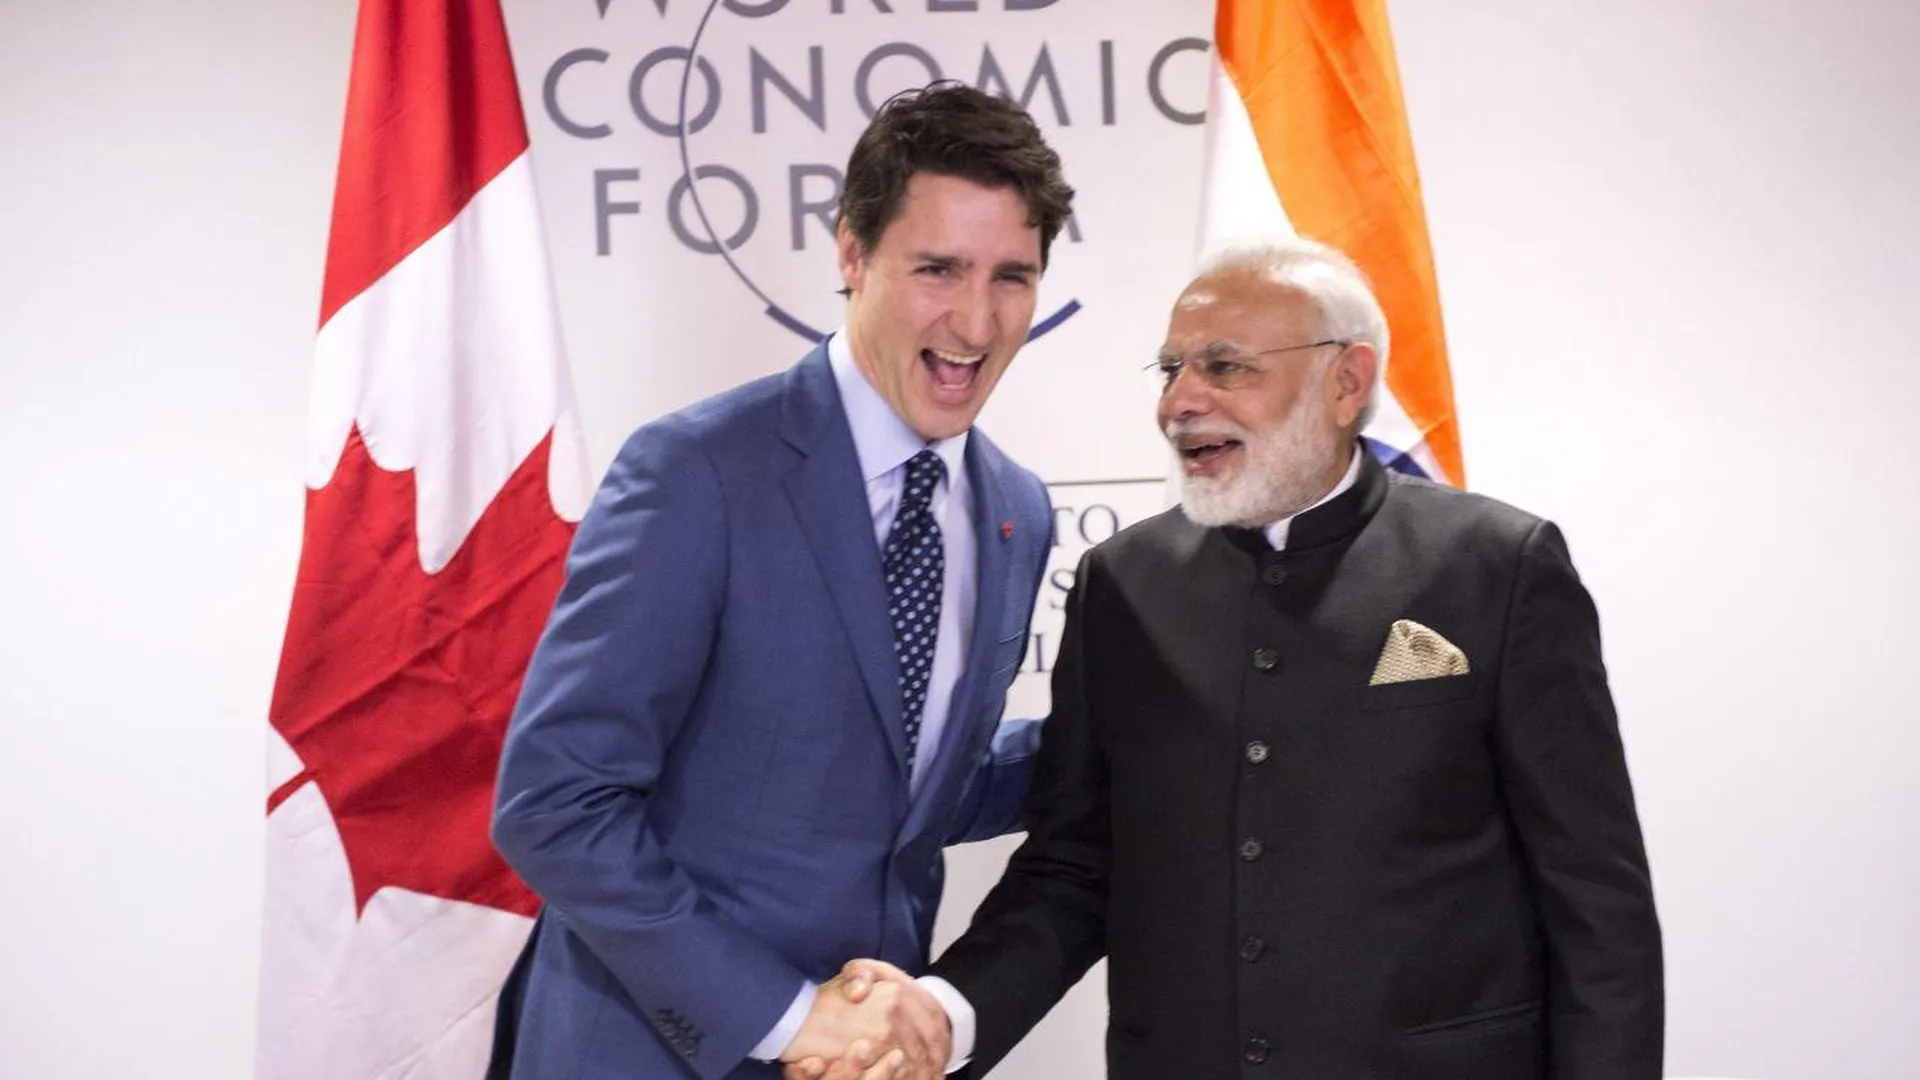 Индийские СМИ набросились на канадского премьера Трюдо